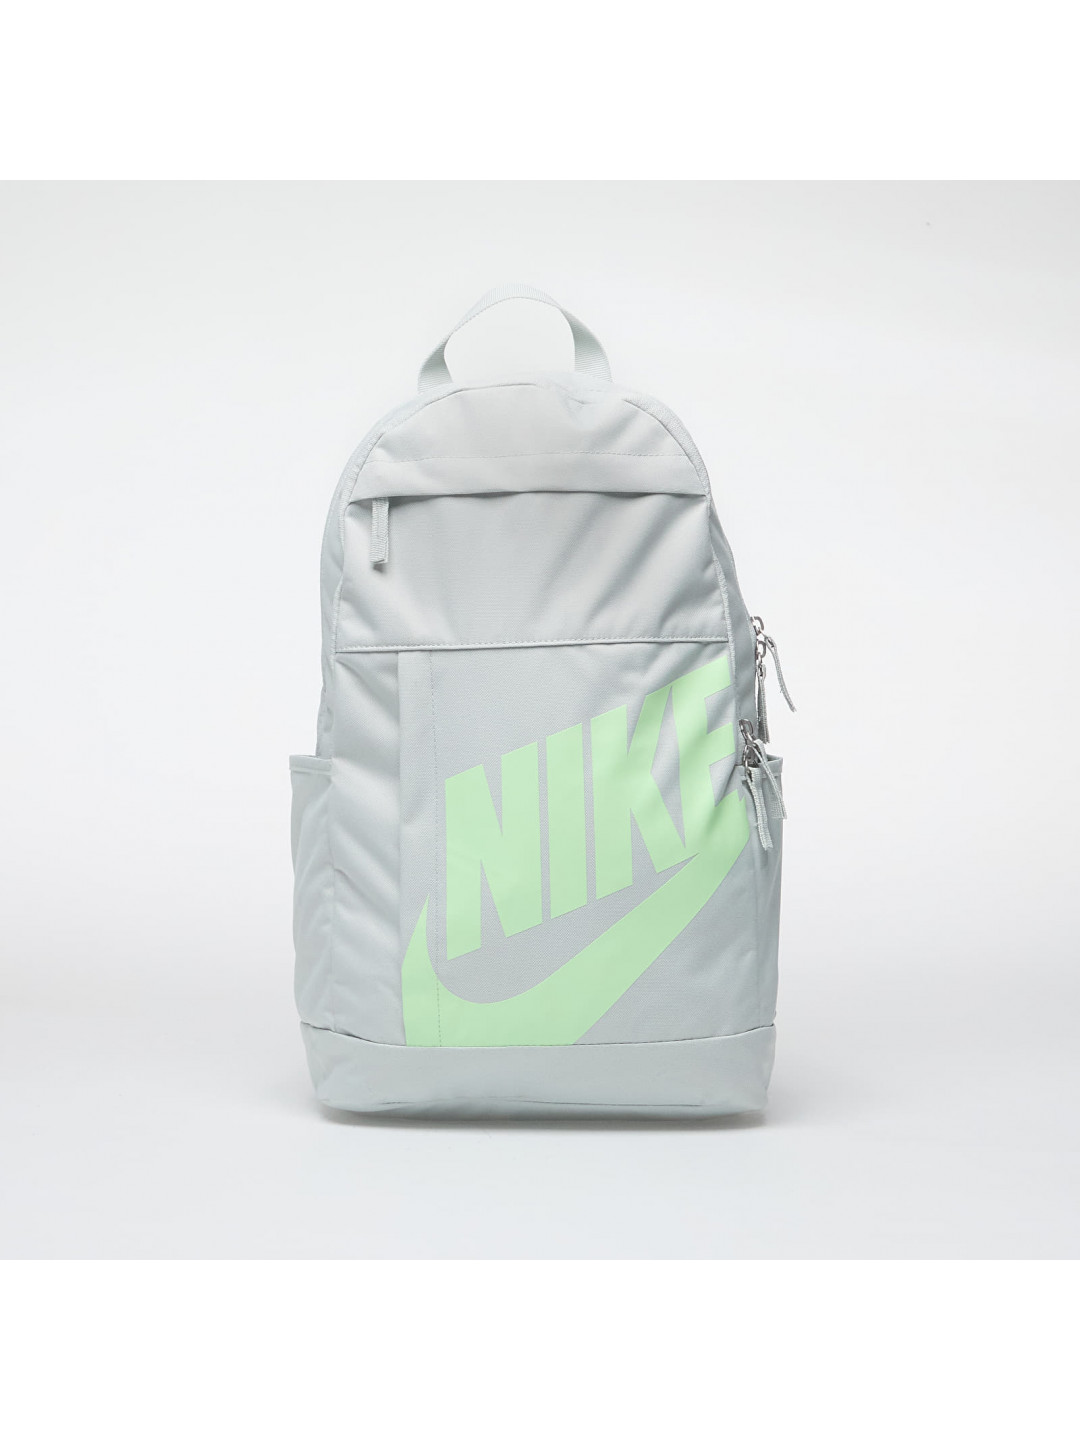 Nike Elemental Backpack Light Silver Light Silver Vapor Green